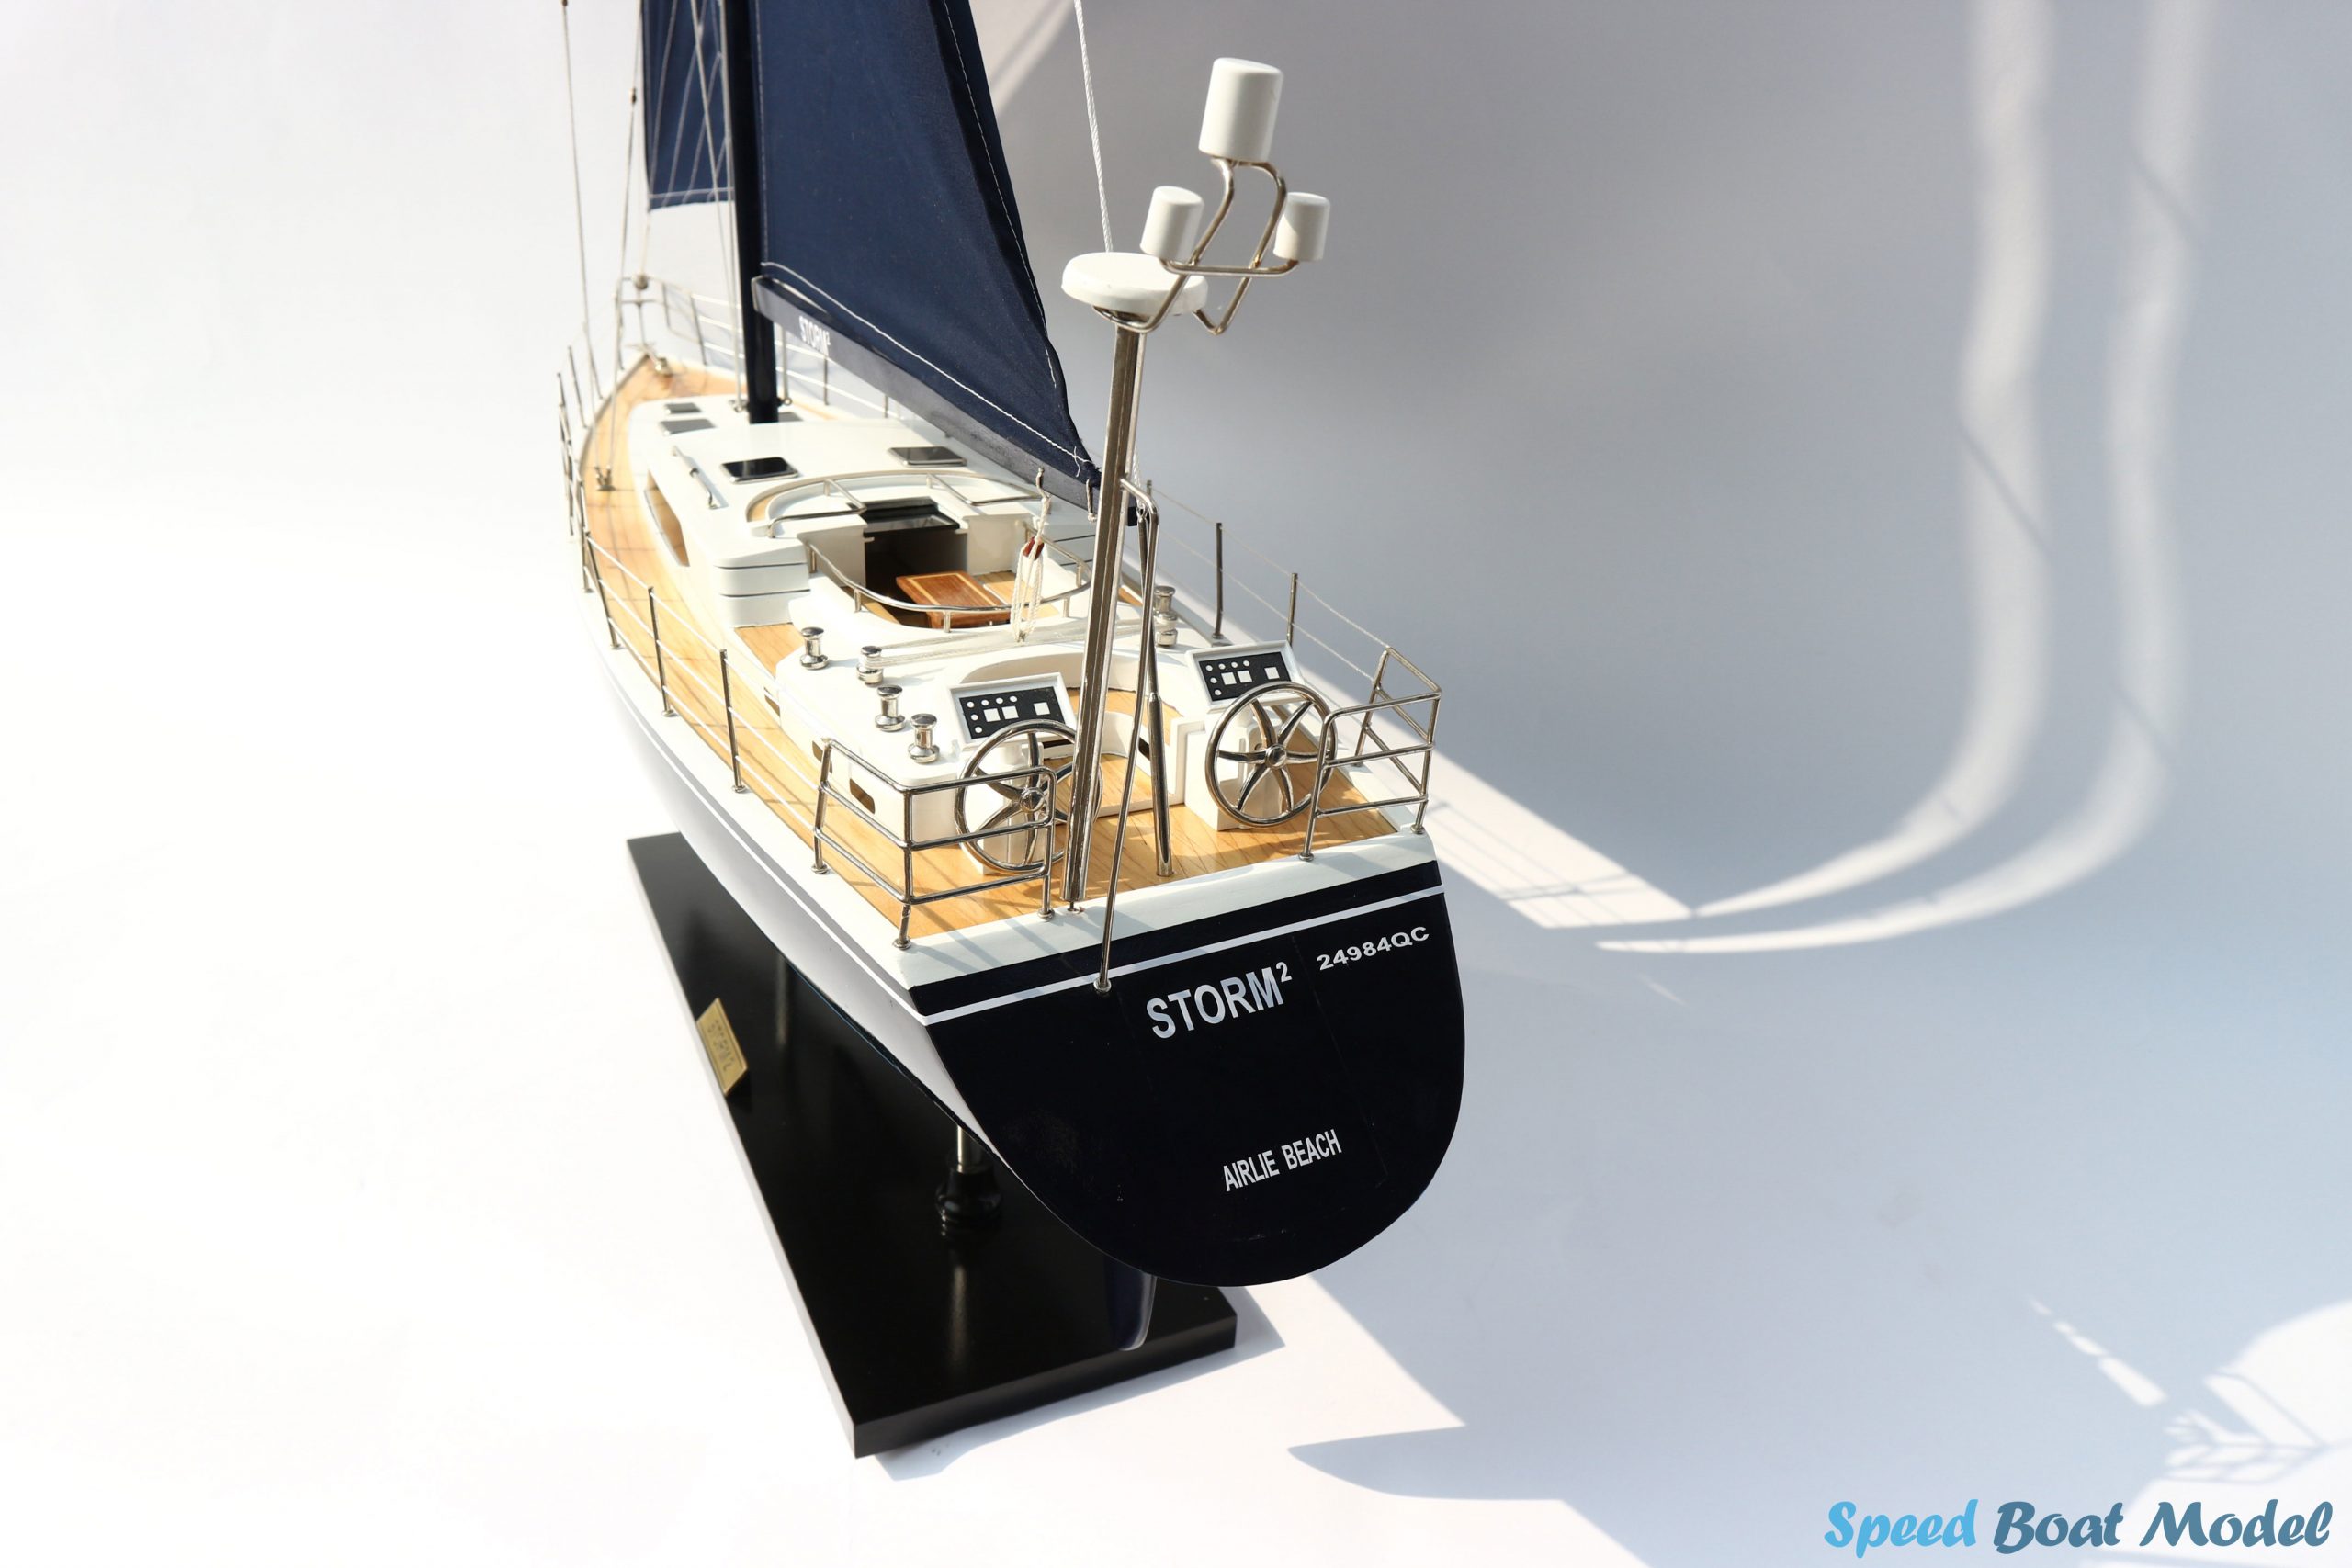 Storm 2 Sailing Boat Model 31.5"